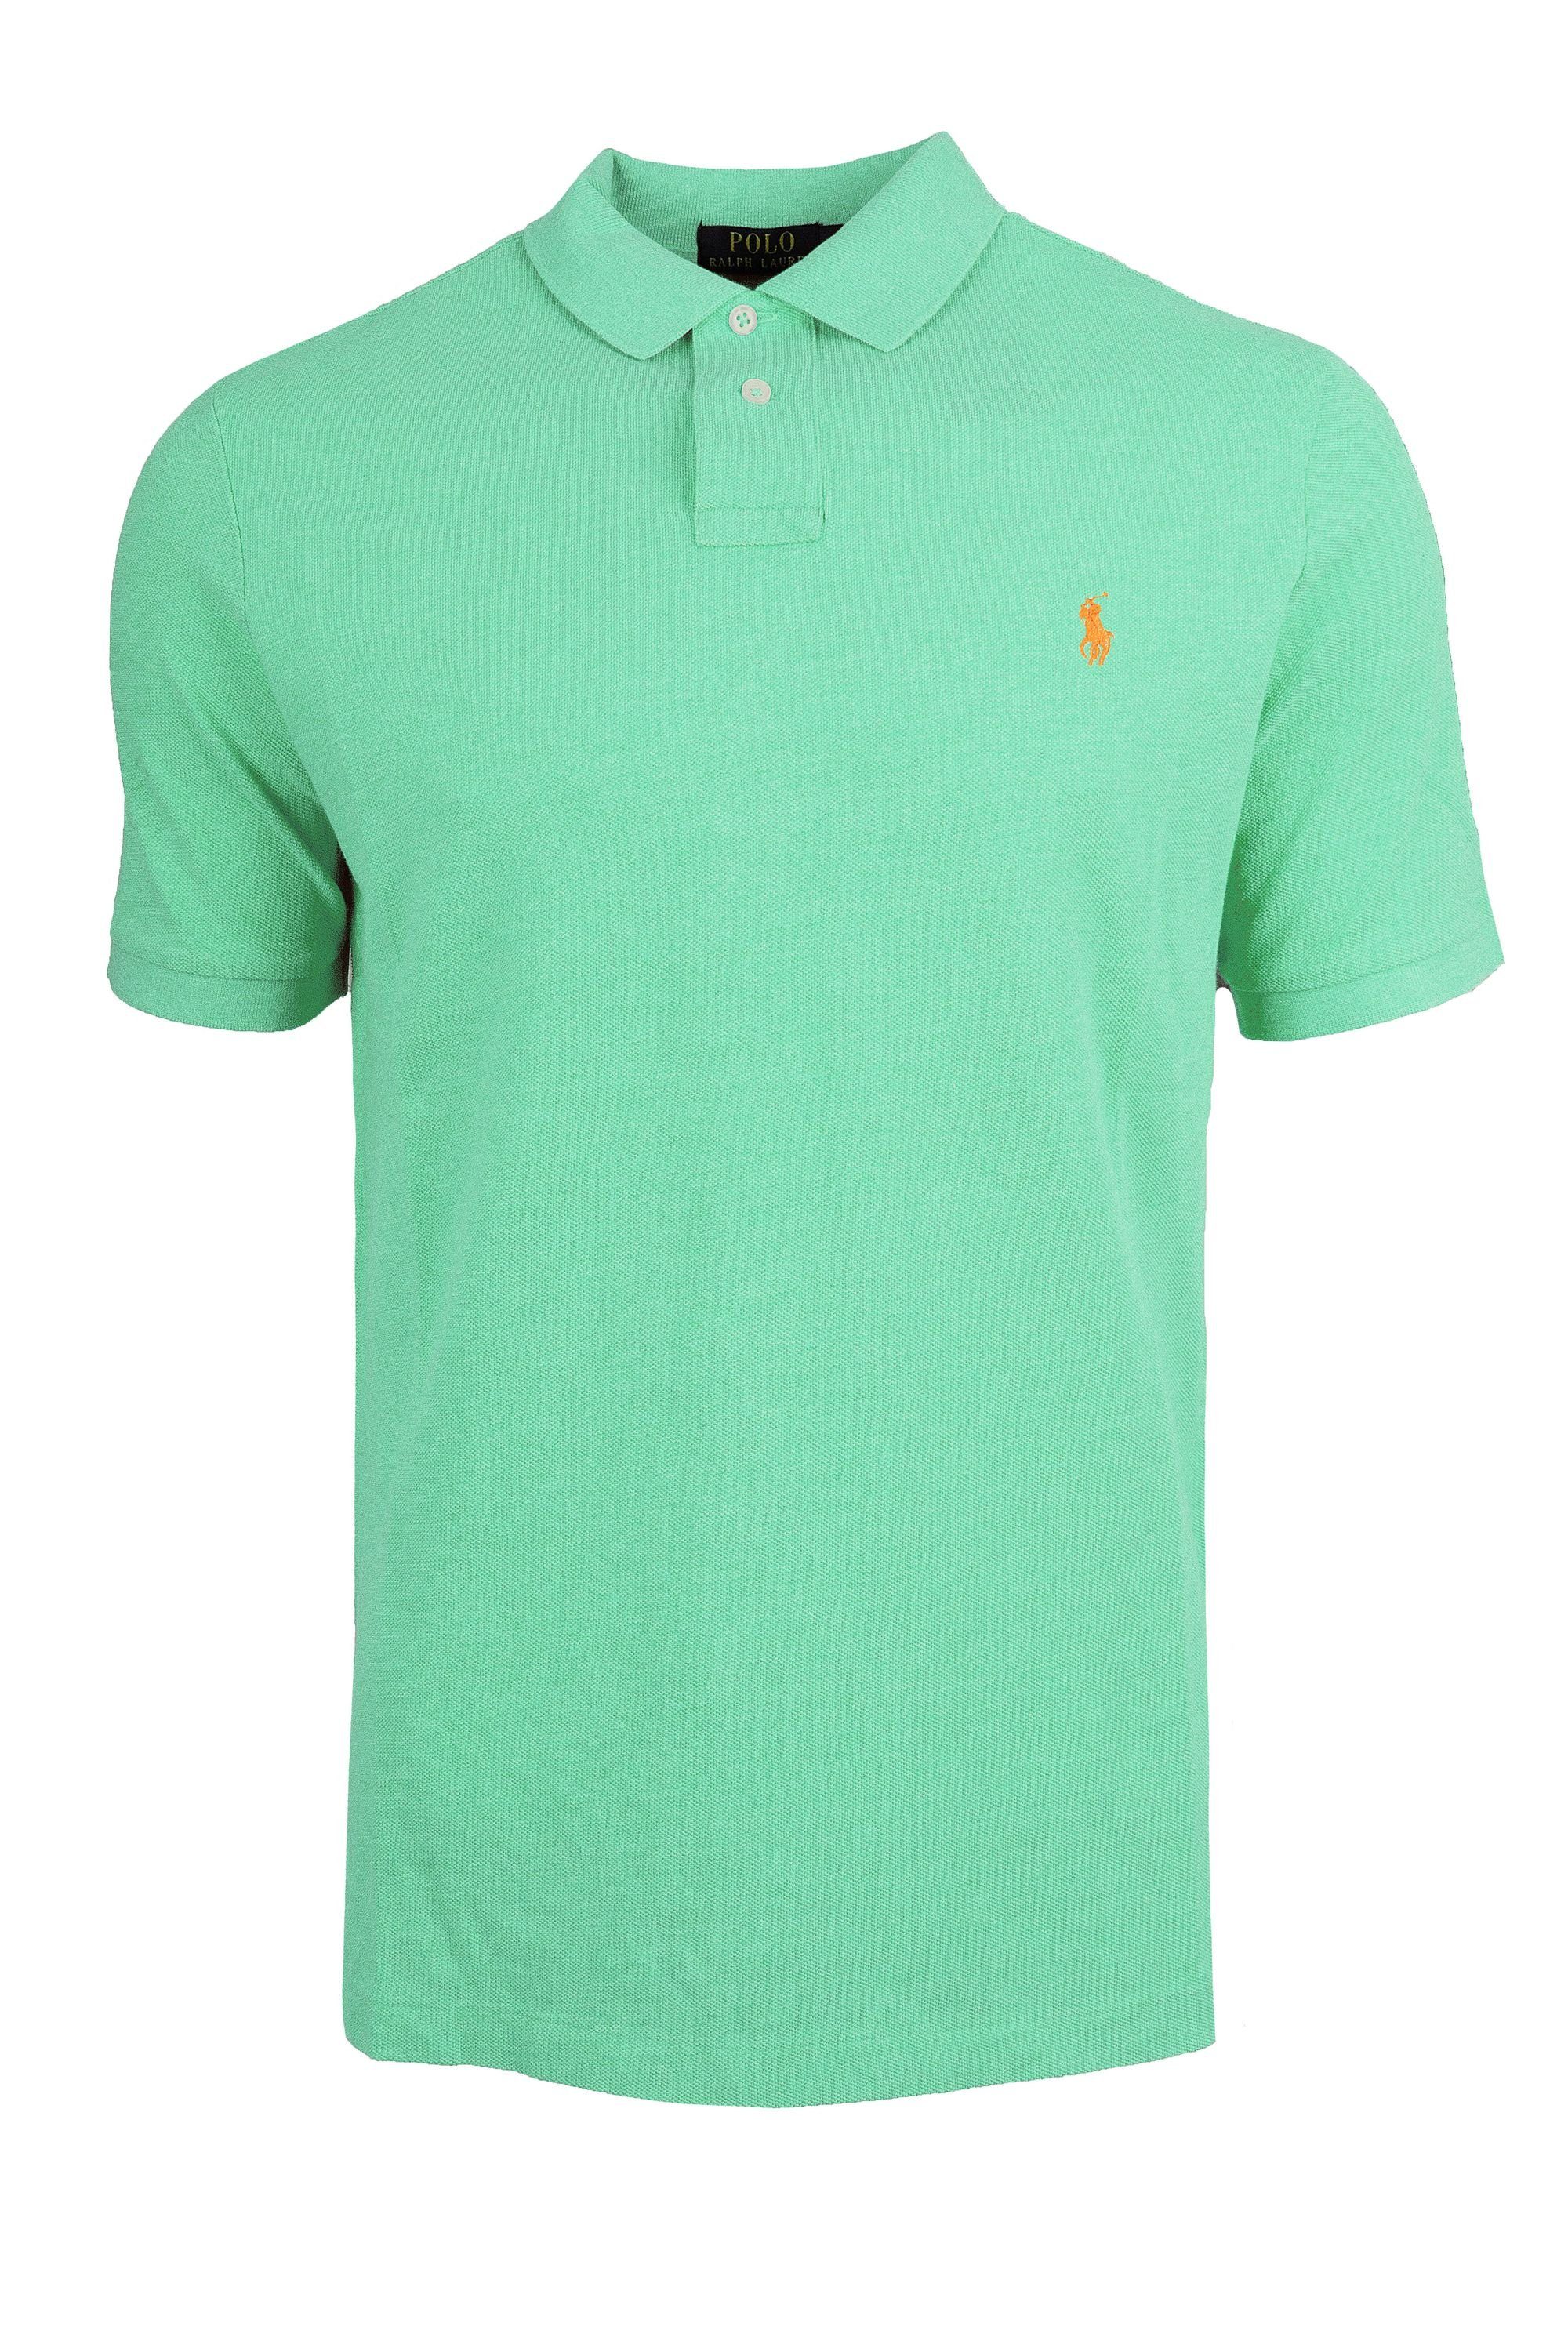 Ralph Lauren Poloshirt Ralph Lauren Herren Poloshirt Slim Fit S-XXL Hellgrün - Orange | Poloshirts